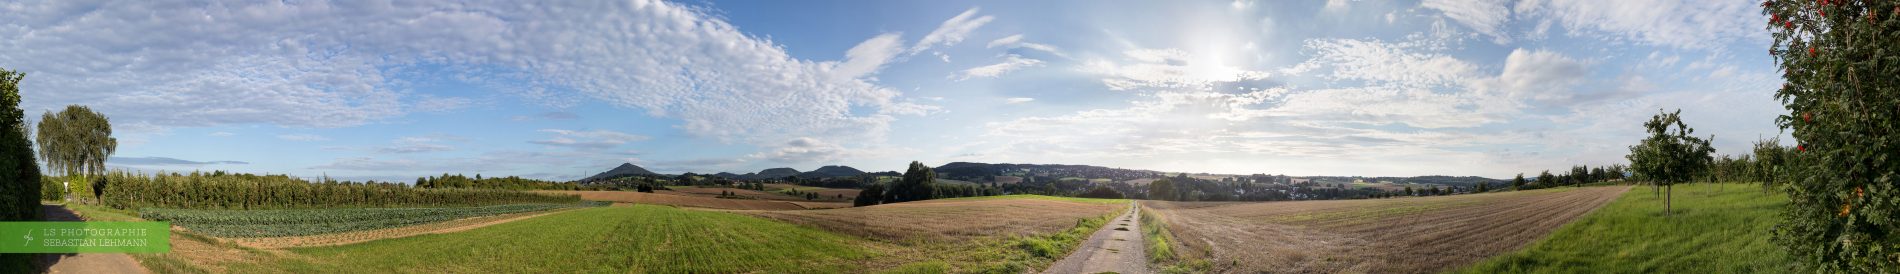 Fotograf Düren - Panorama des Siebengebirges von Koenigswinter-Bockeroth aus gesehen